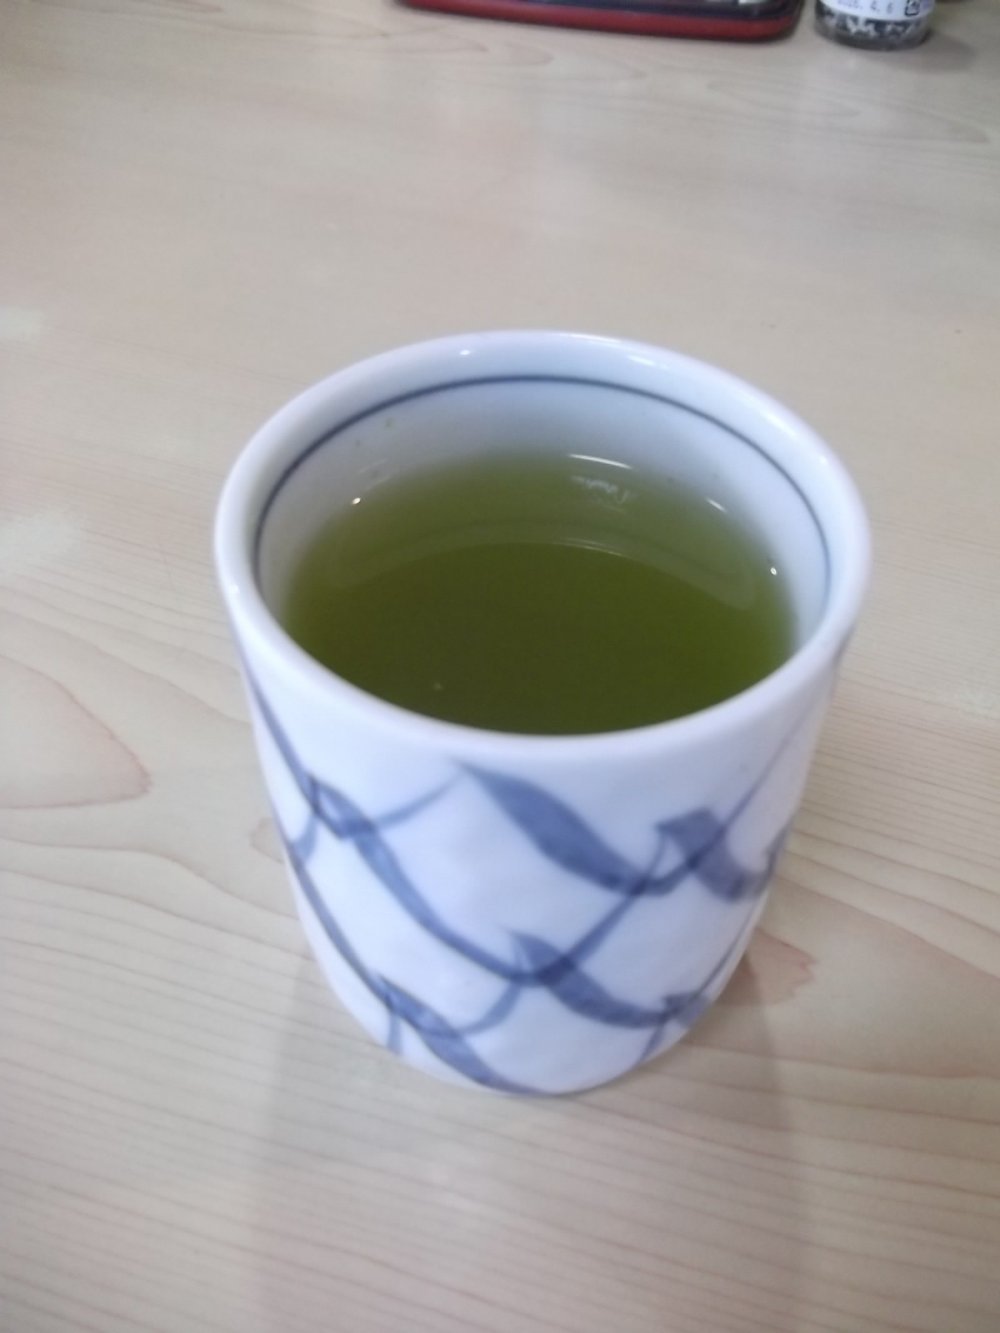 Trà xanh được phục vụ trong một chiếc tách xinh đẹp